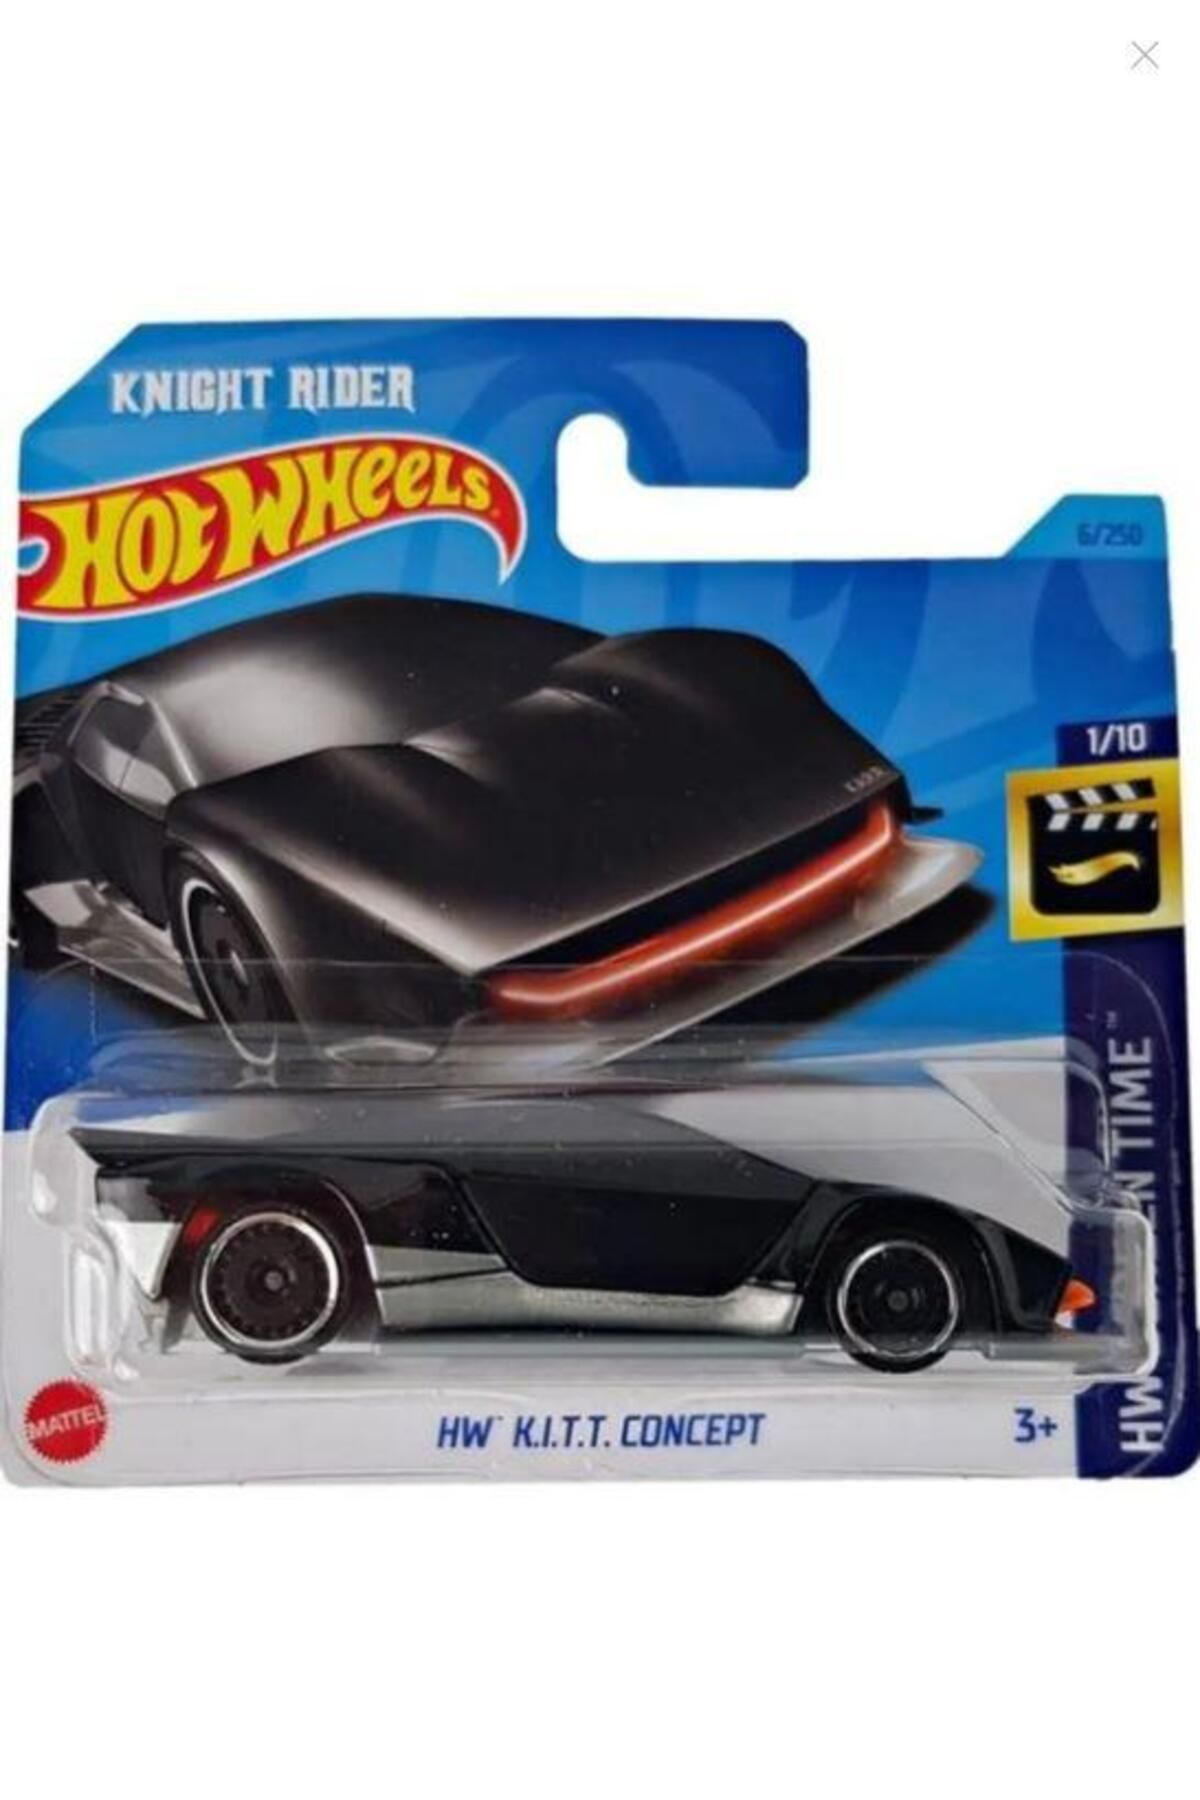 HOT WHEELS Knight Rider Hw K.ı.t.t Concept 67/250 1/10 Model Araba